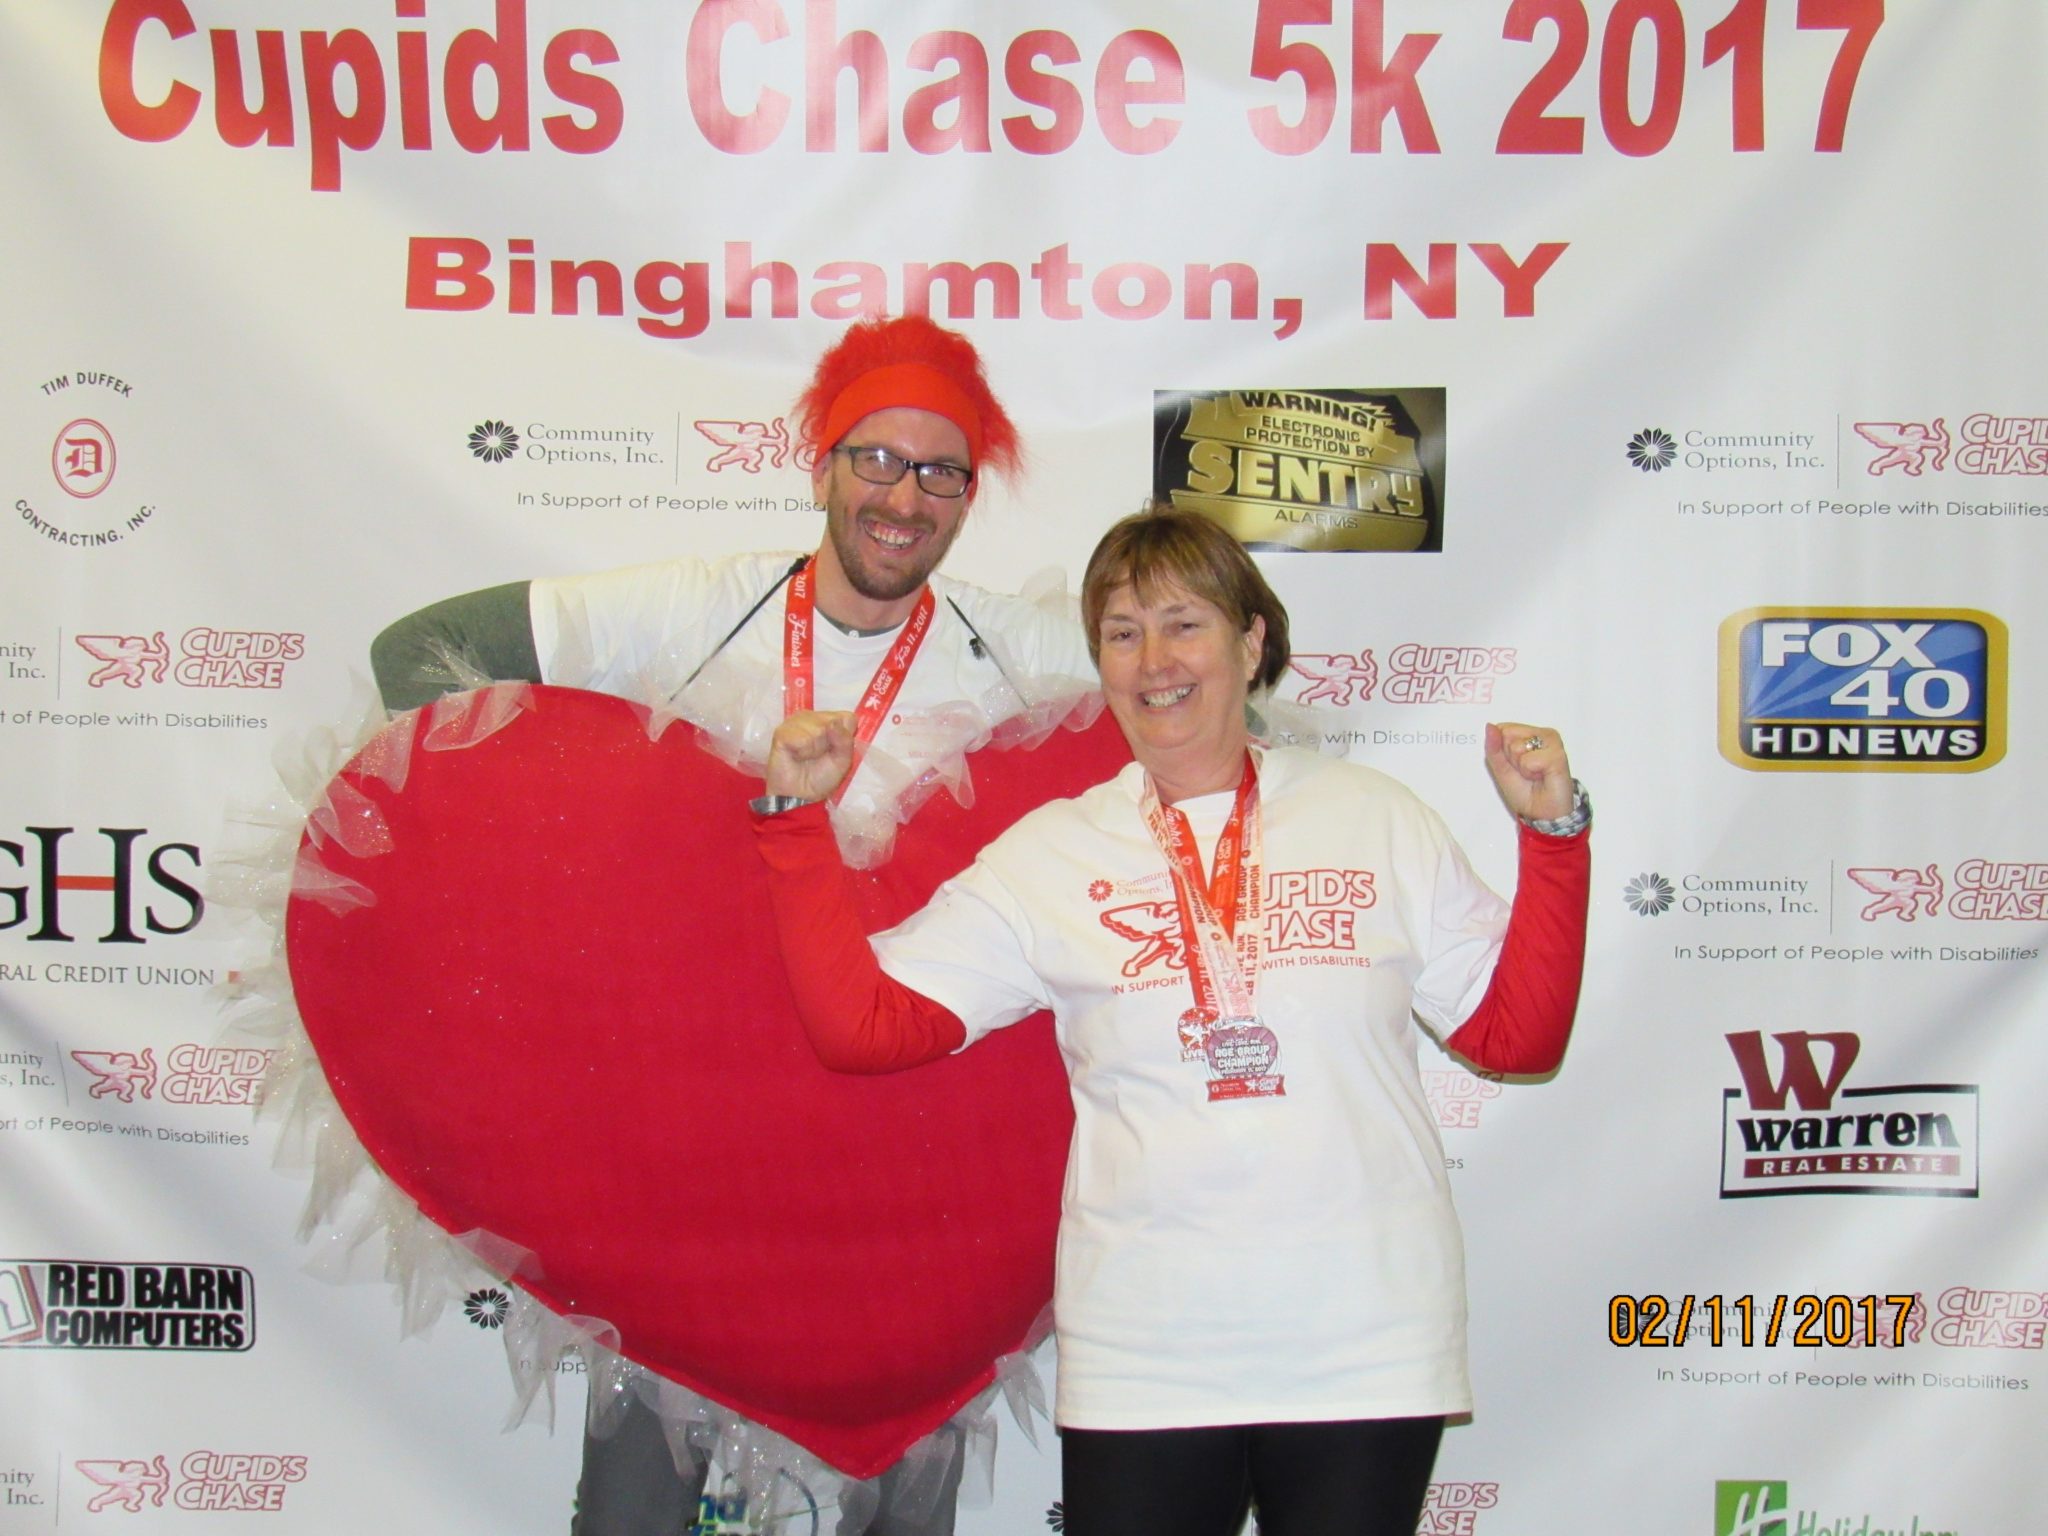 9th Annual Cupid’s Chase 5K, Binghamton NY